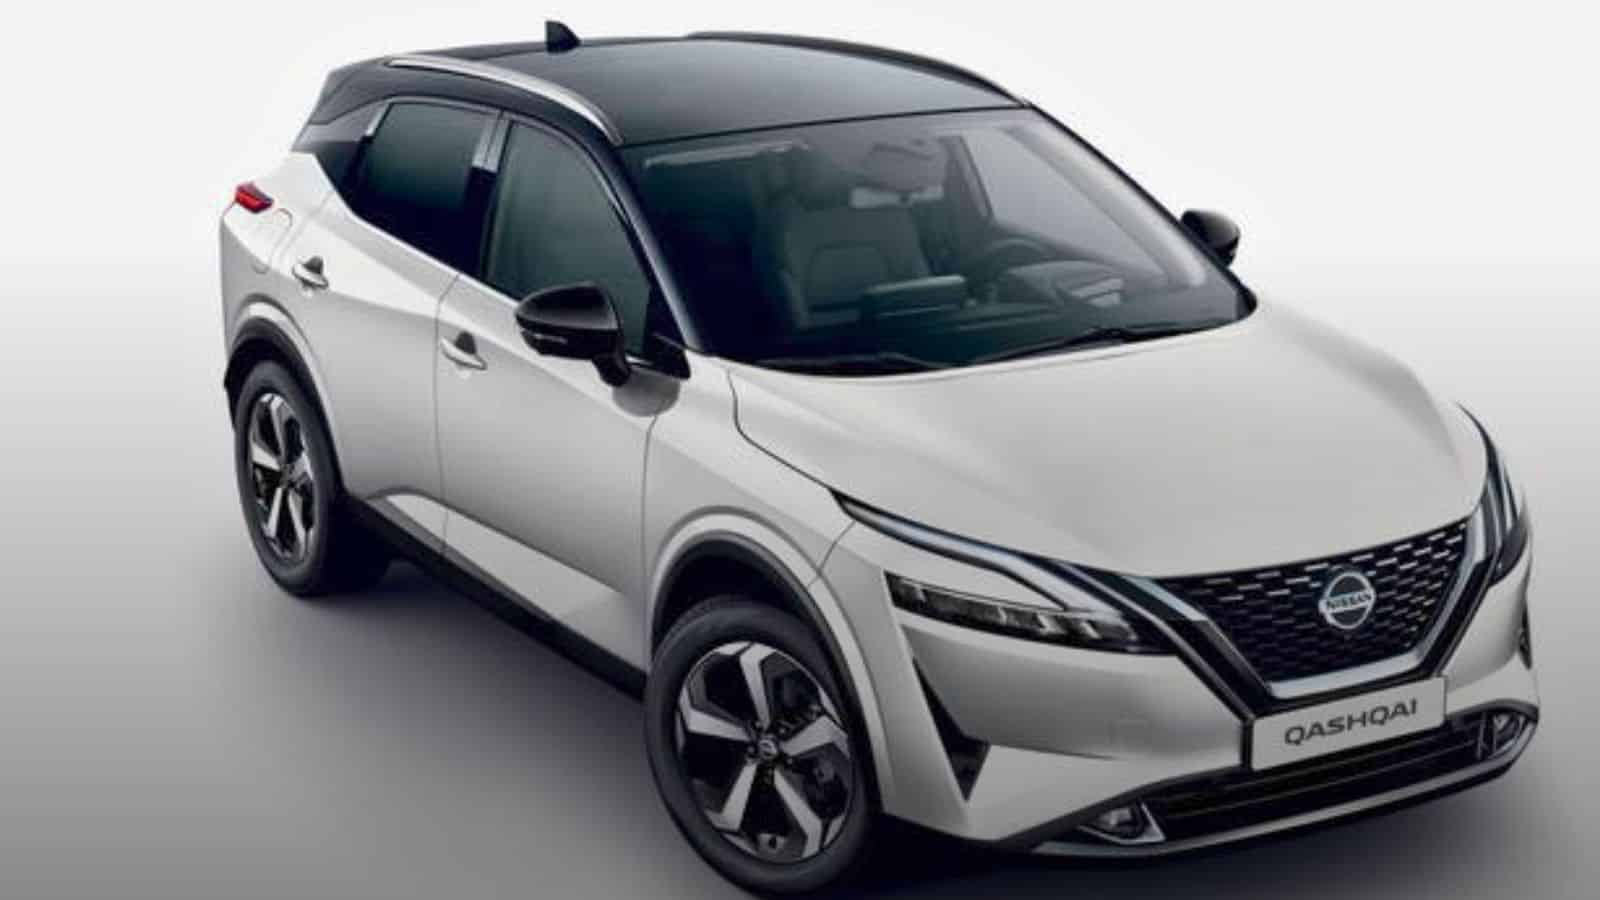  Nuova Nissan Qashqai: design migliorato e più tecnologia